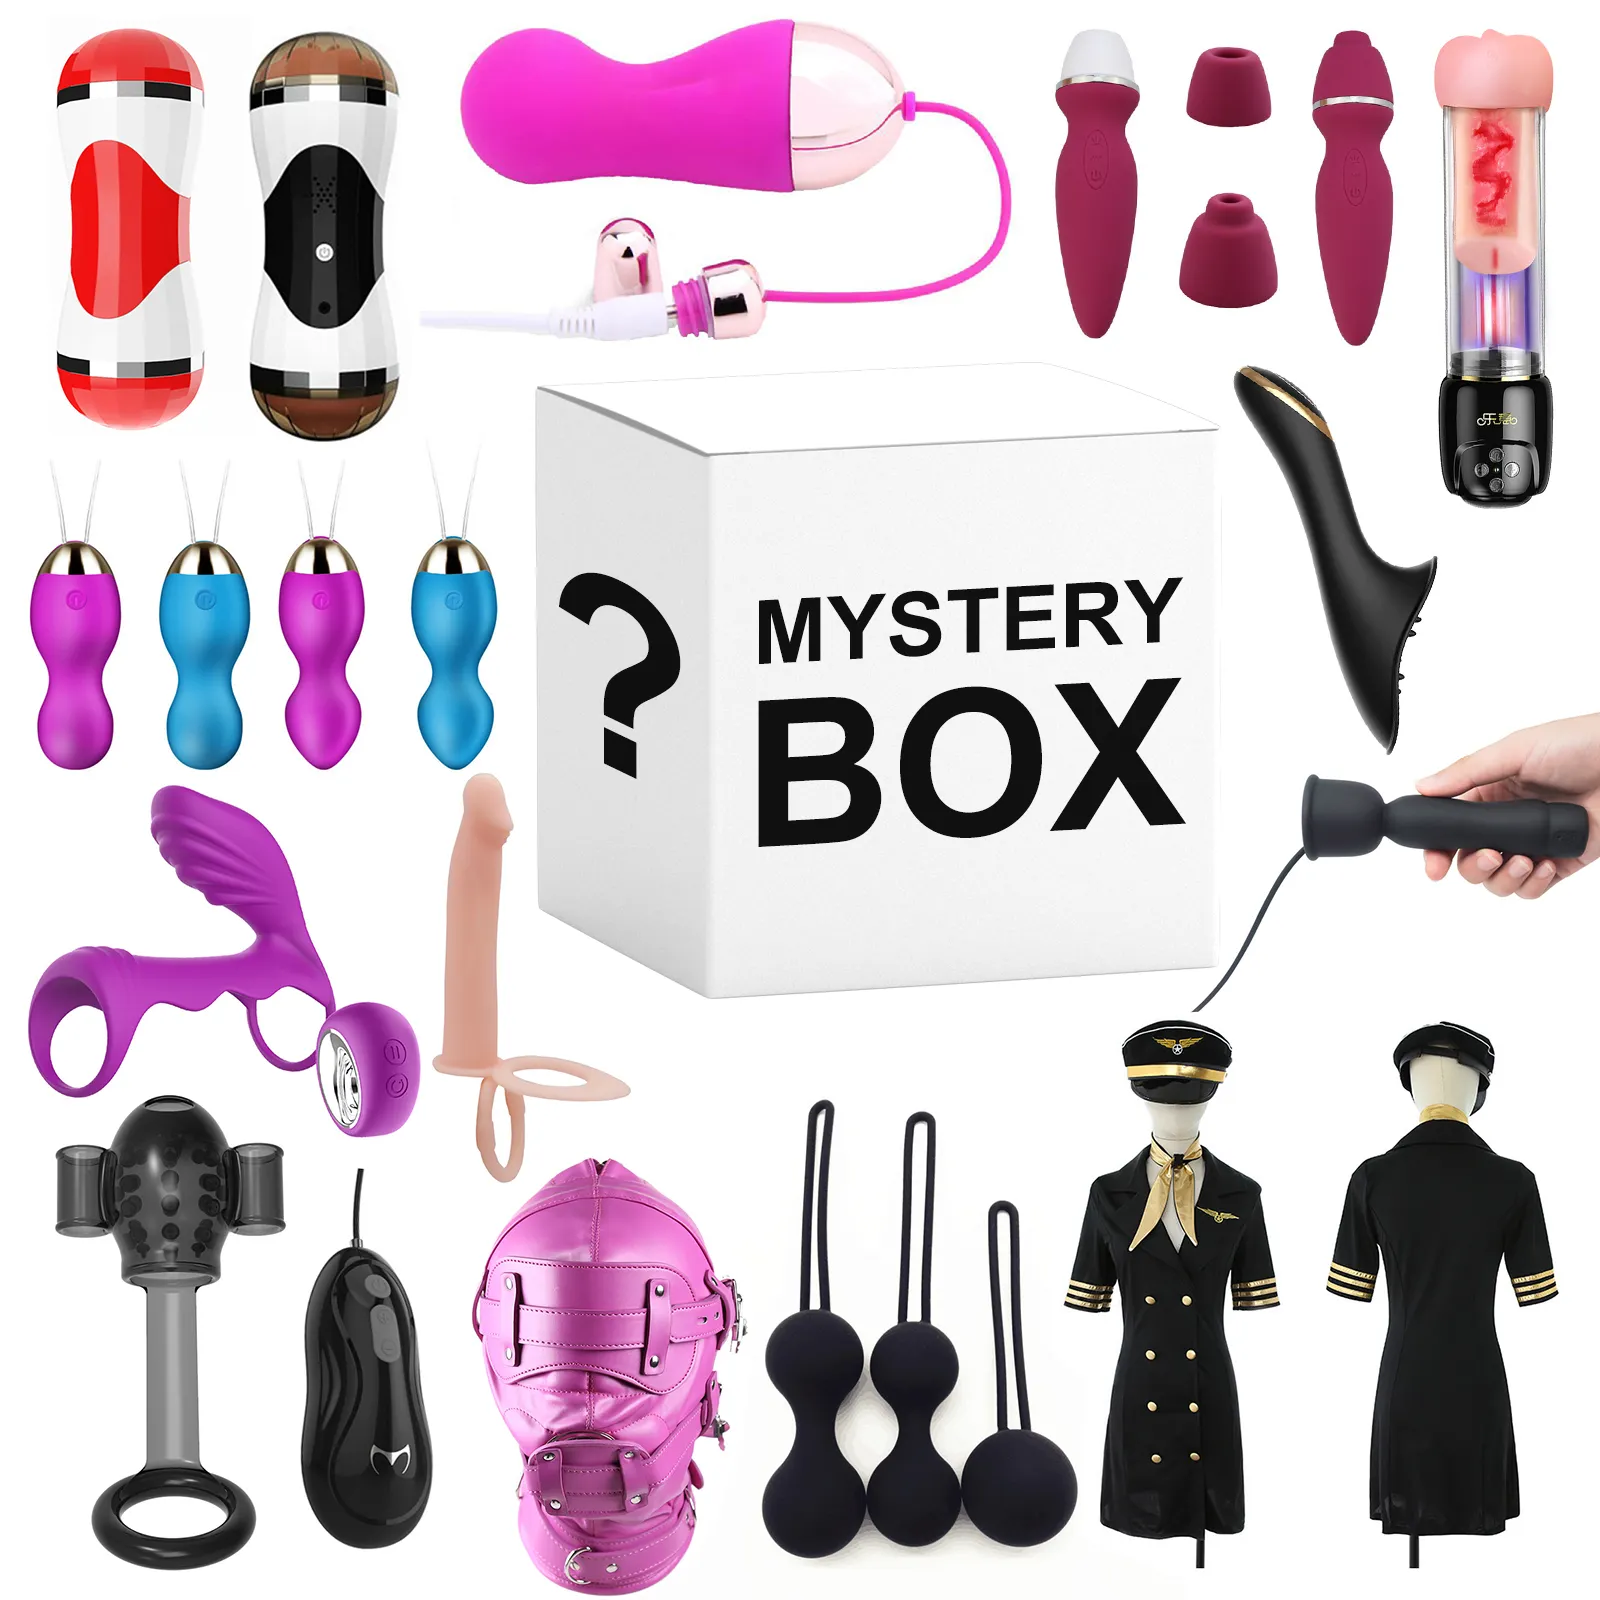 Giocattoli adulti del sesso scatola del mistero fortunato giocattolo del sesso per le donne uomini coppie gioco vibratori Sex shop Mystery Box